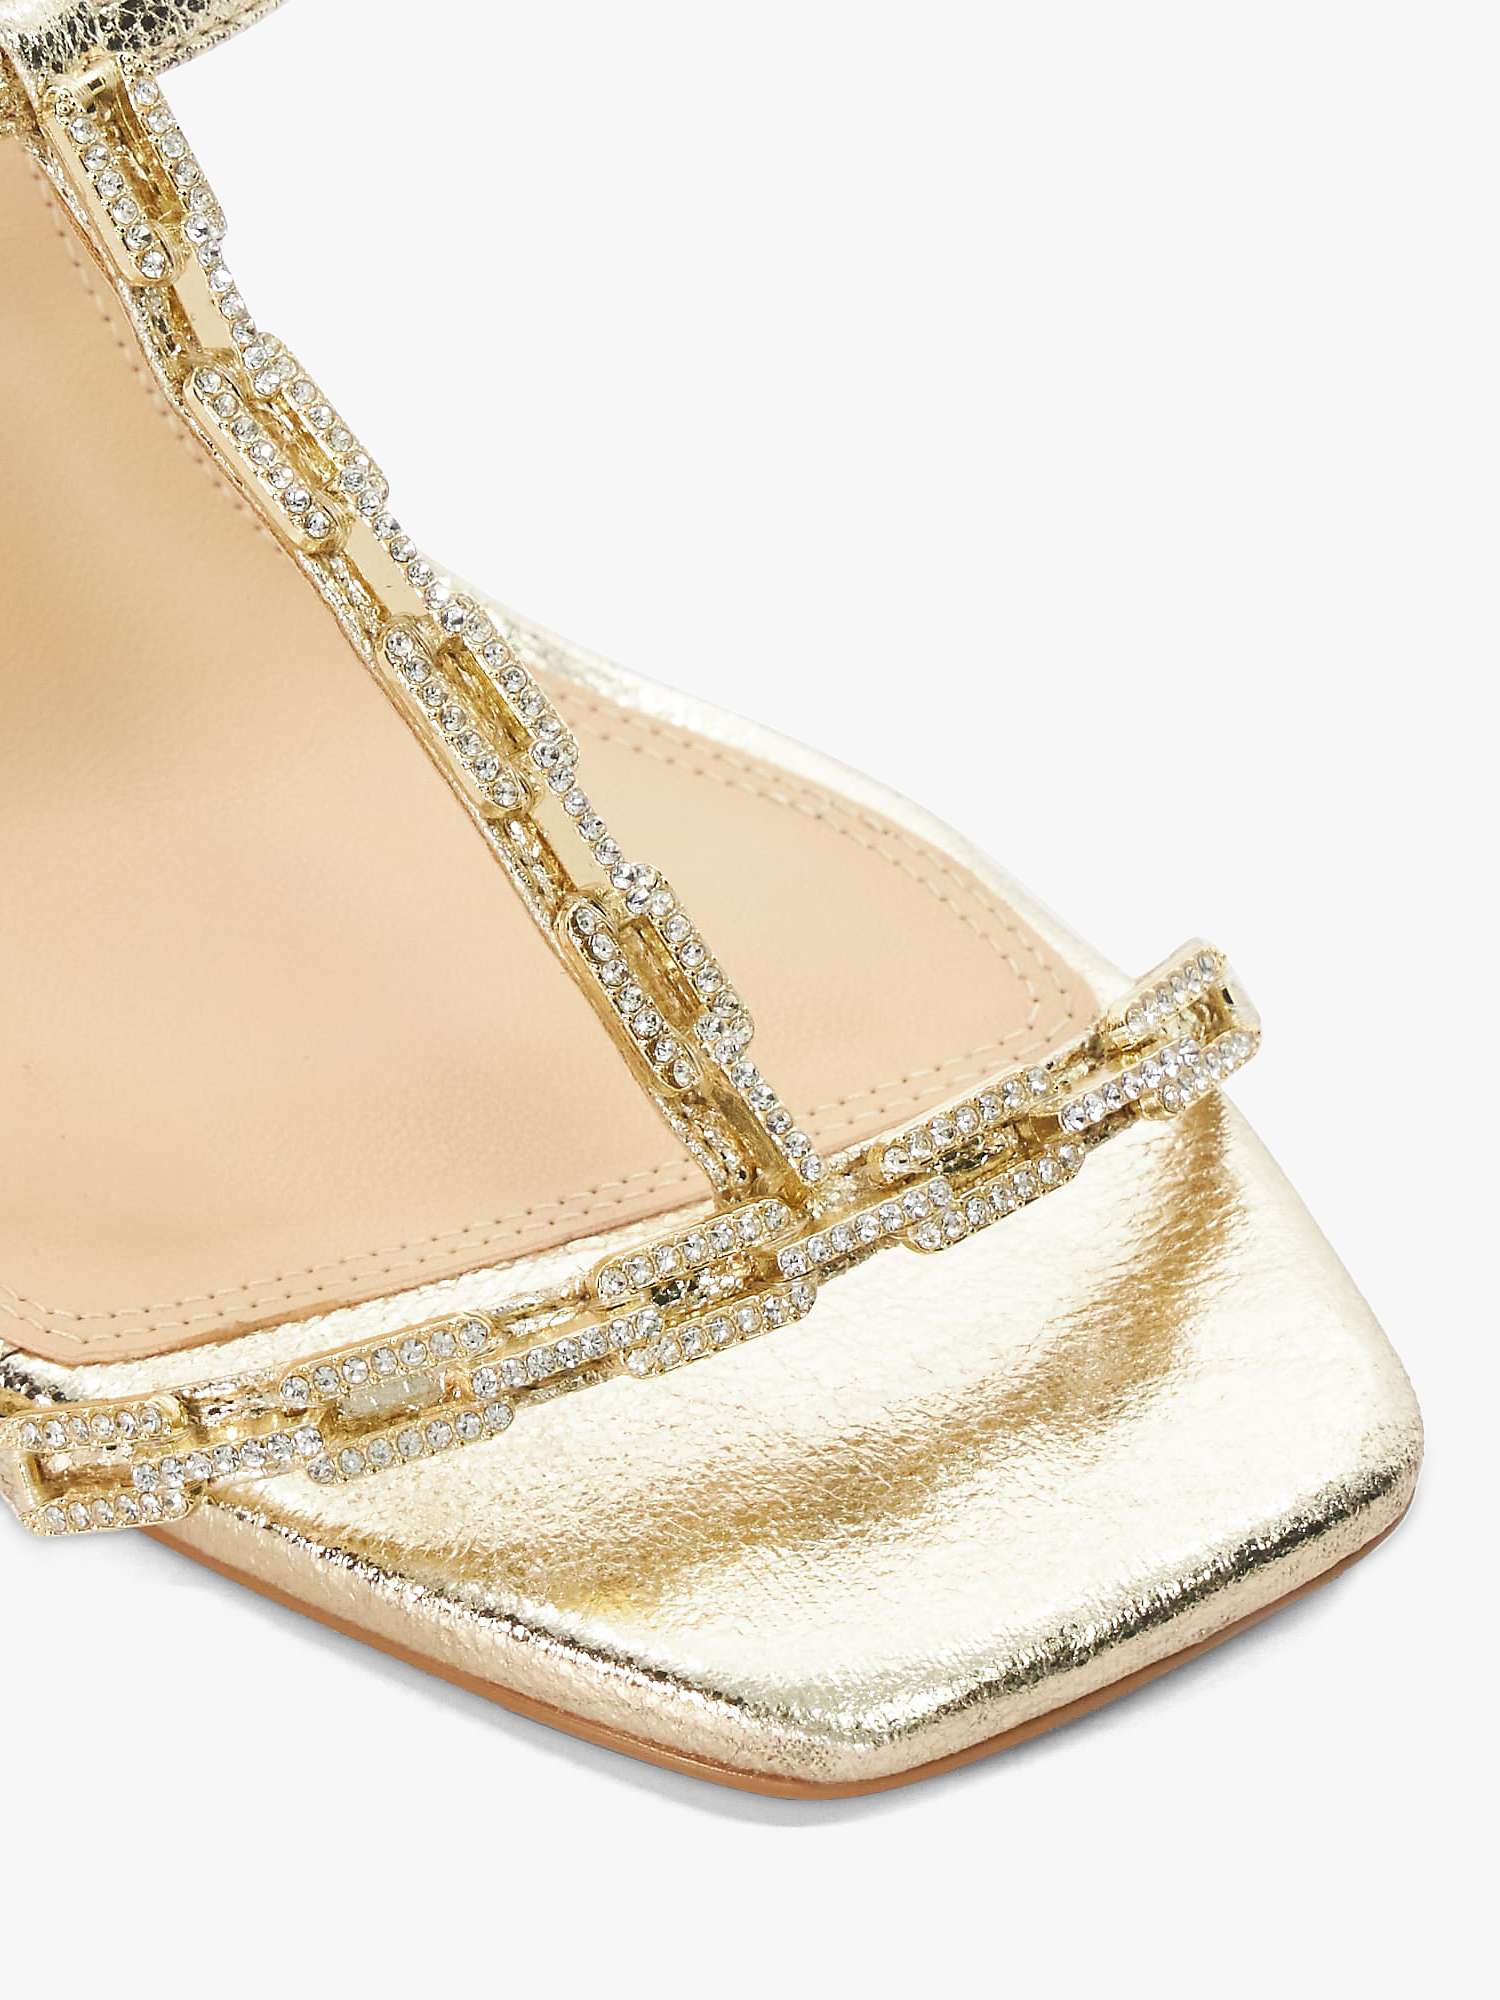 Buy Dune Multimillions Embellished Cork Wedge Sandals, Gold Online at johnlewis.com